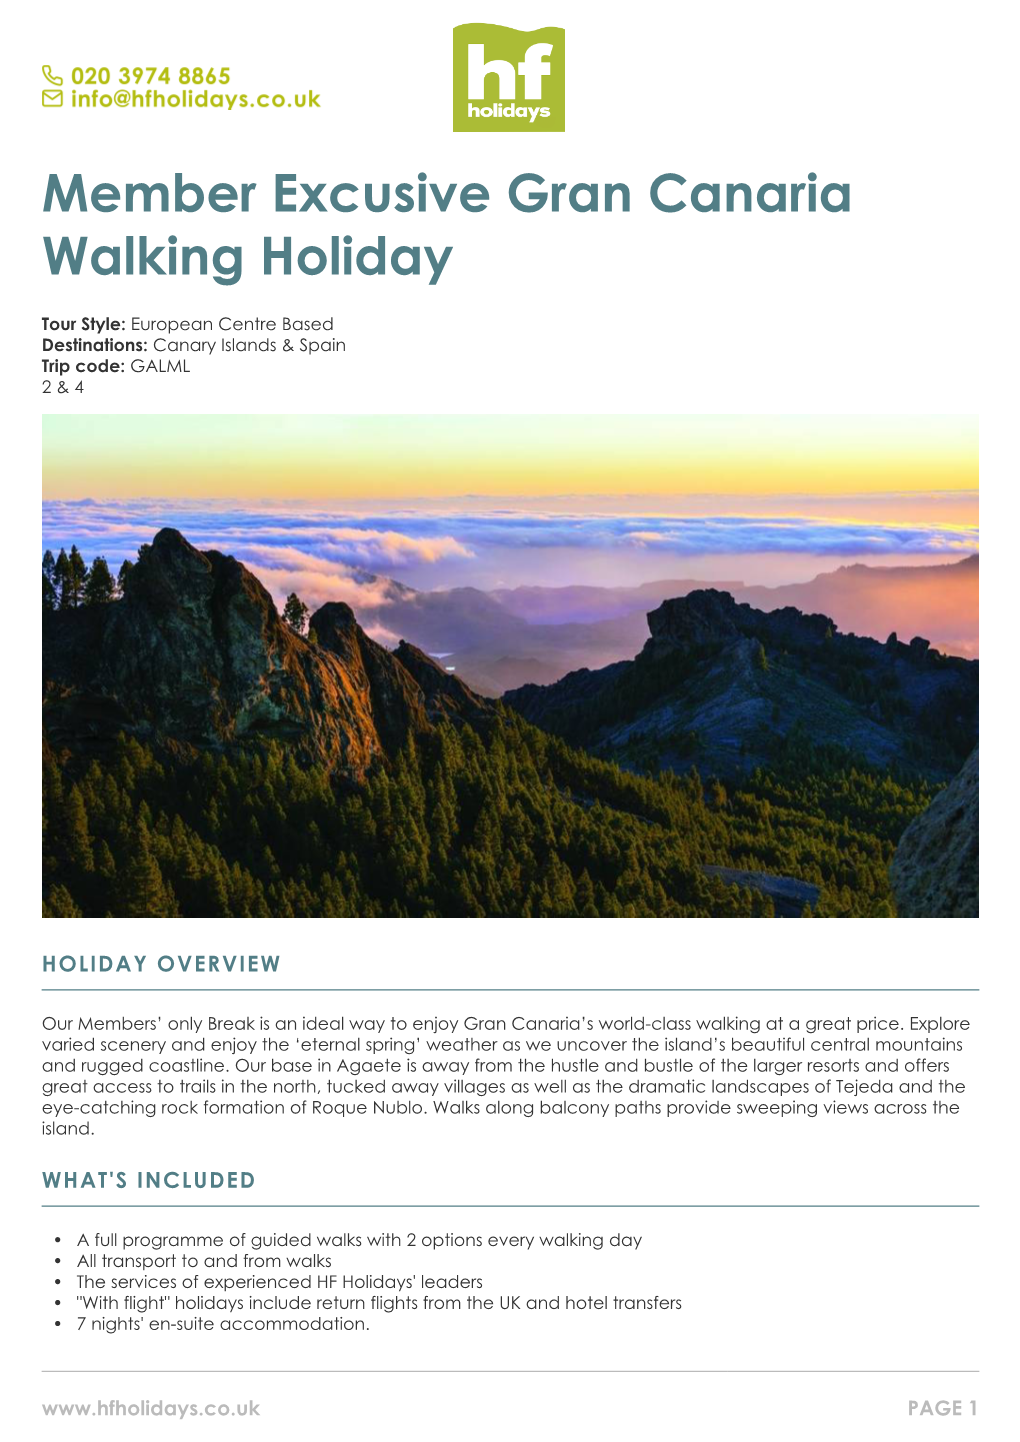 Member Excusive Gran Canaria Walking Holiday